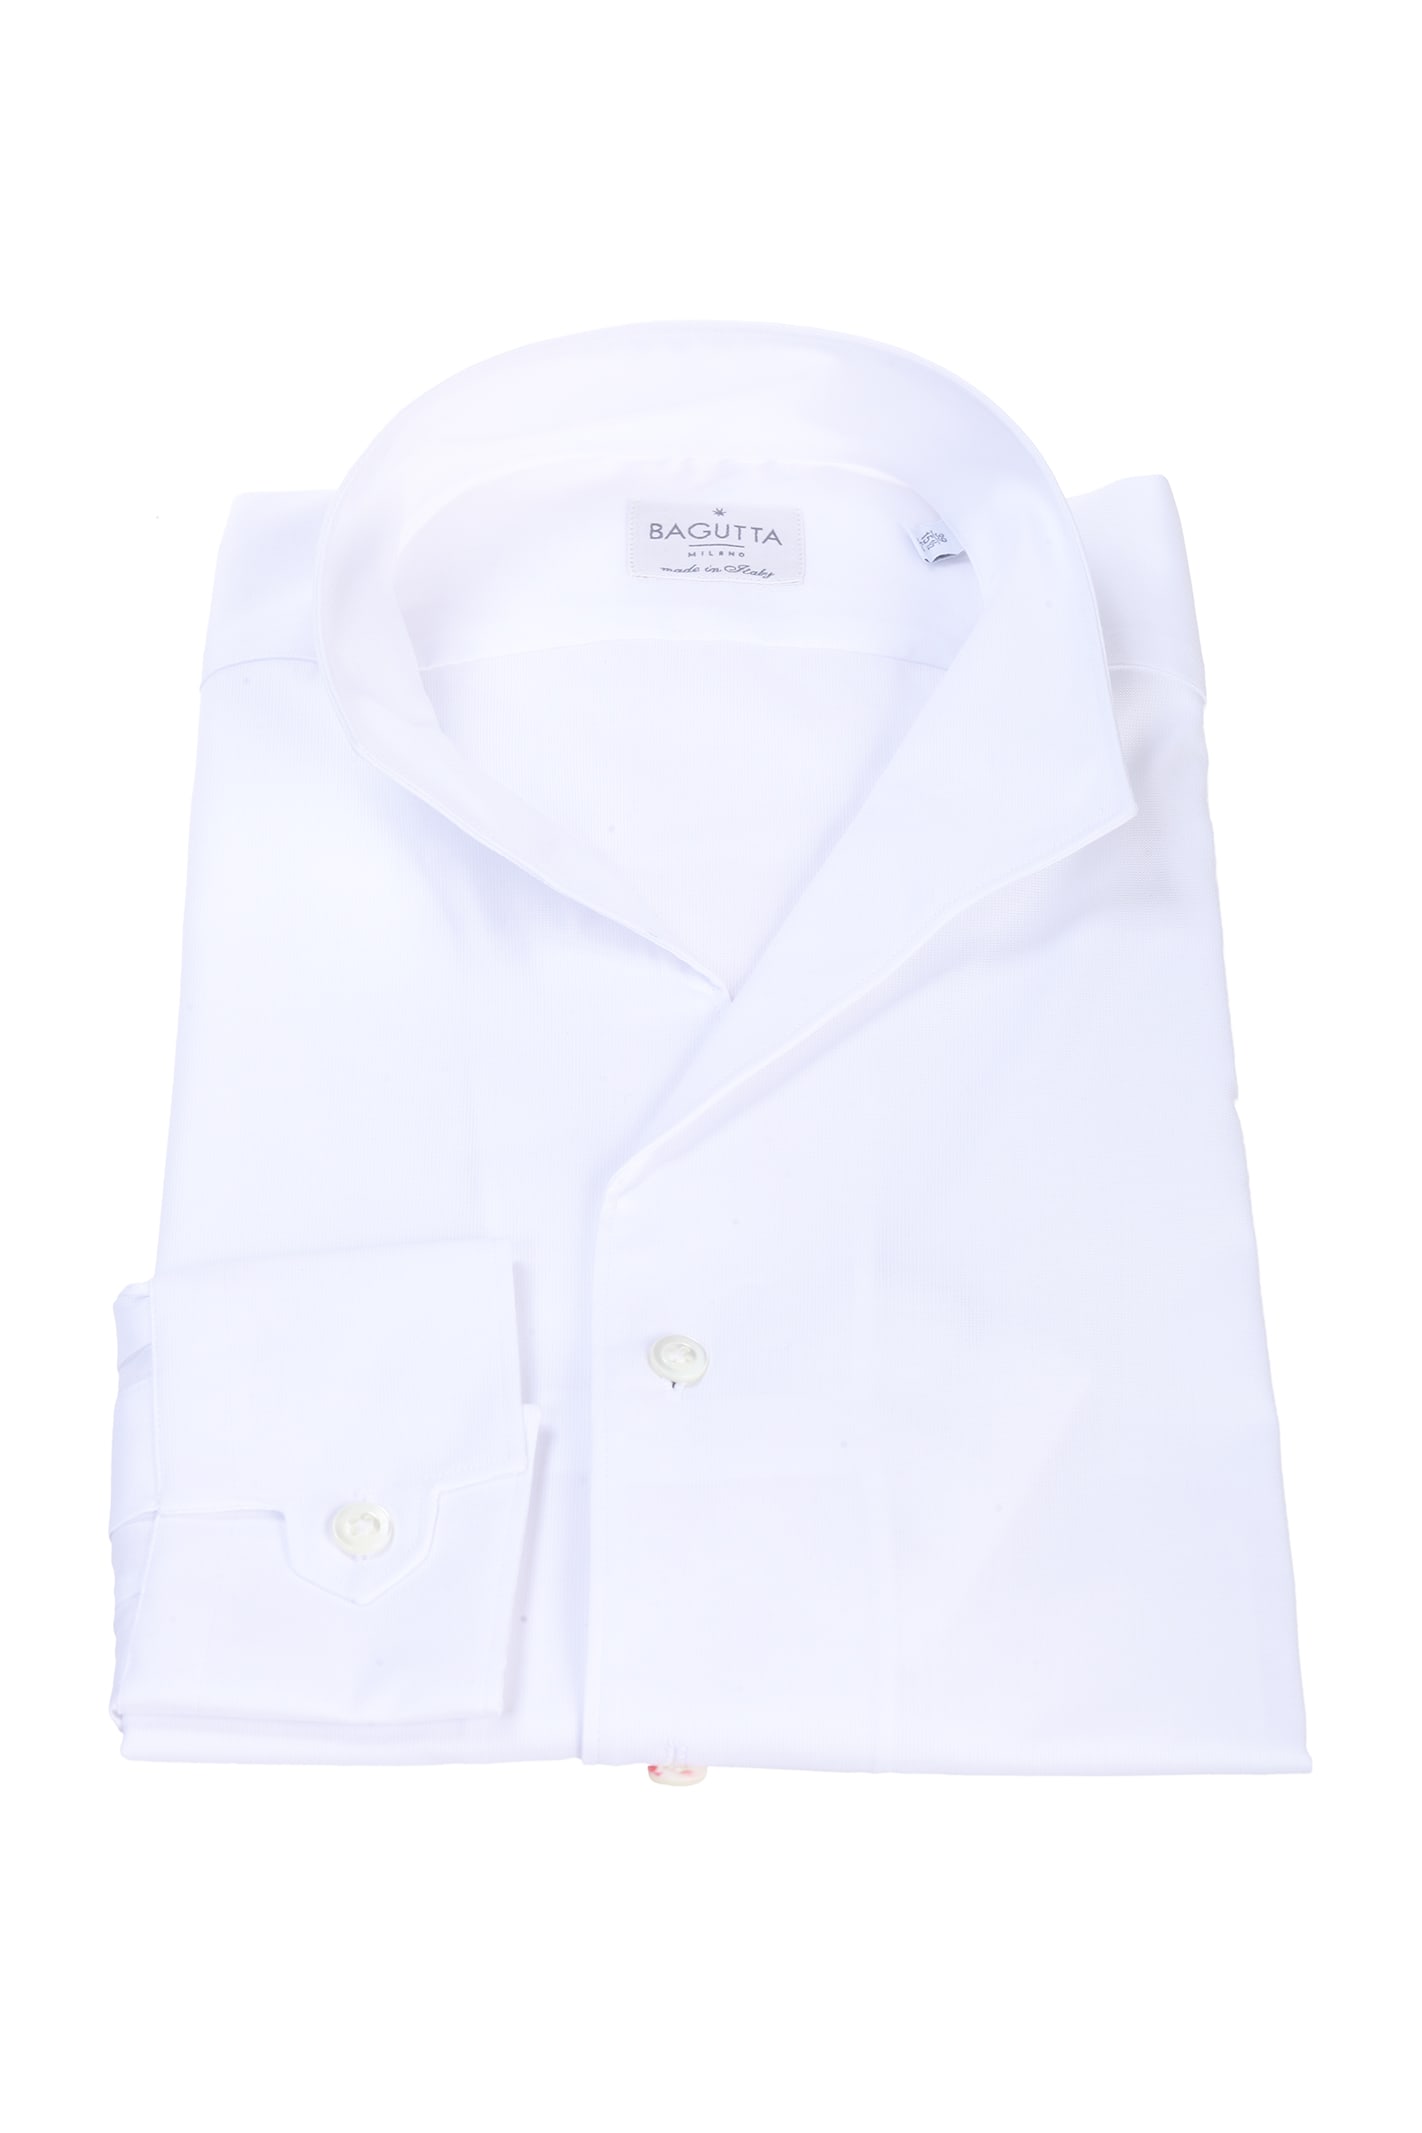 Bagutta white shirt